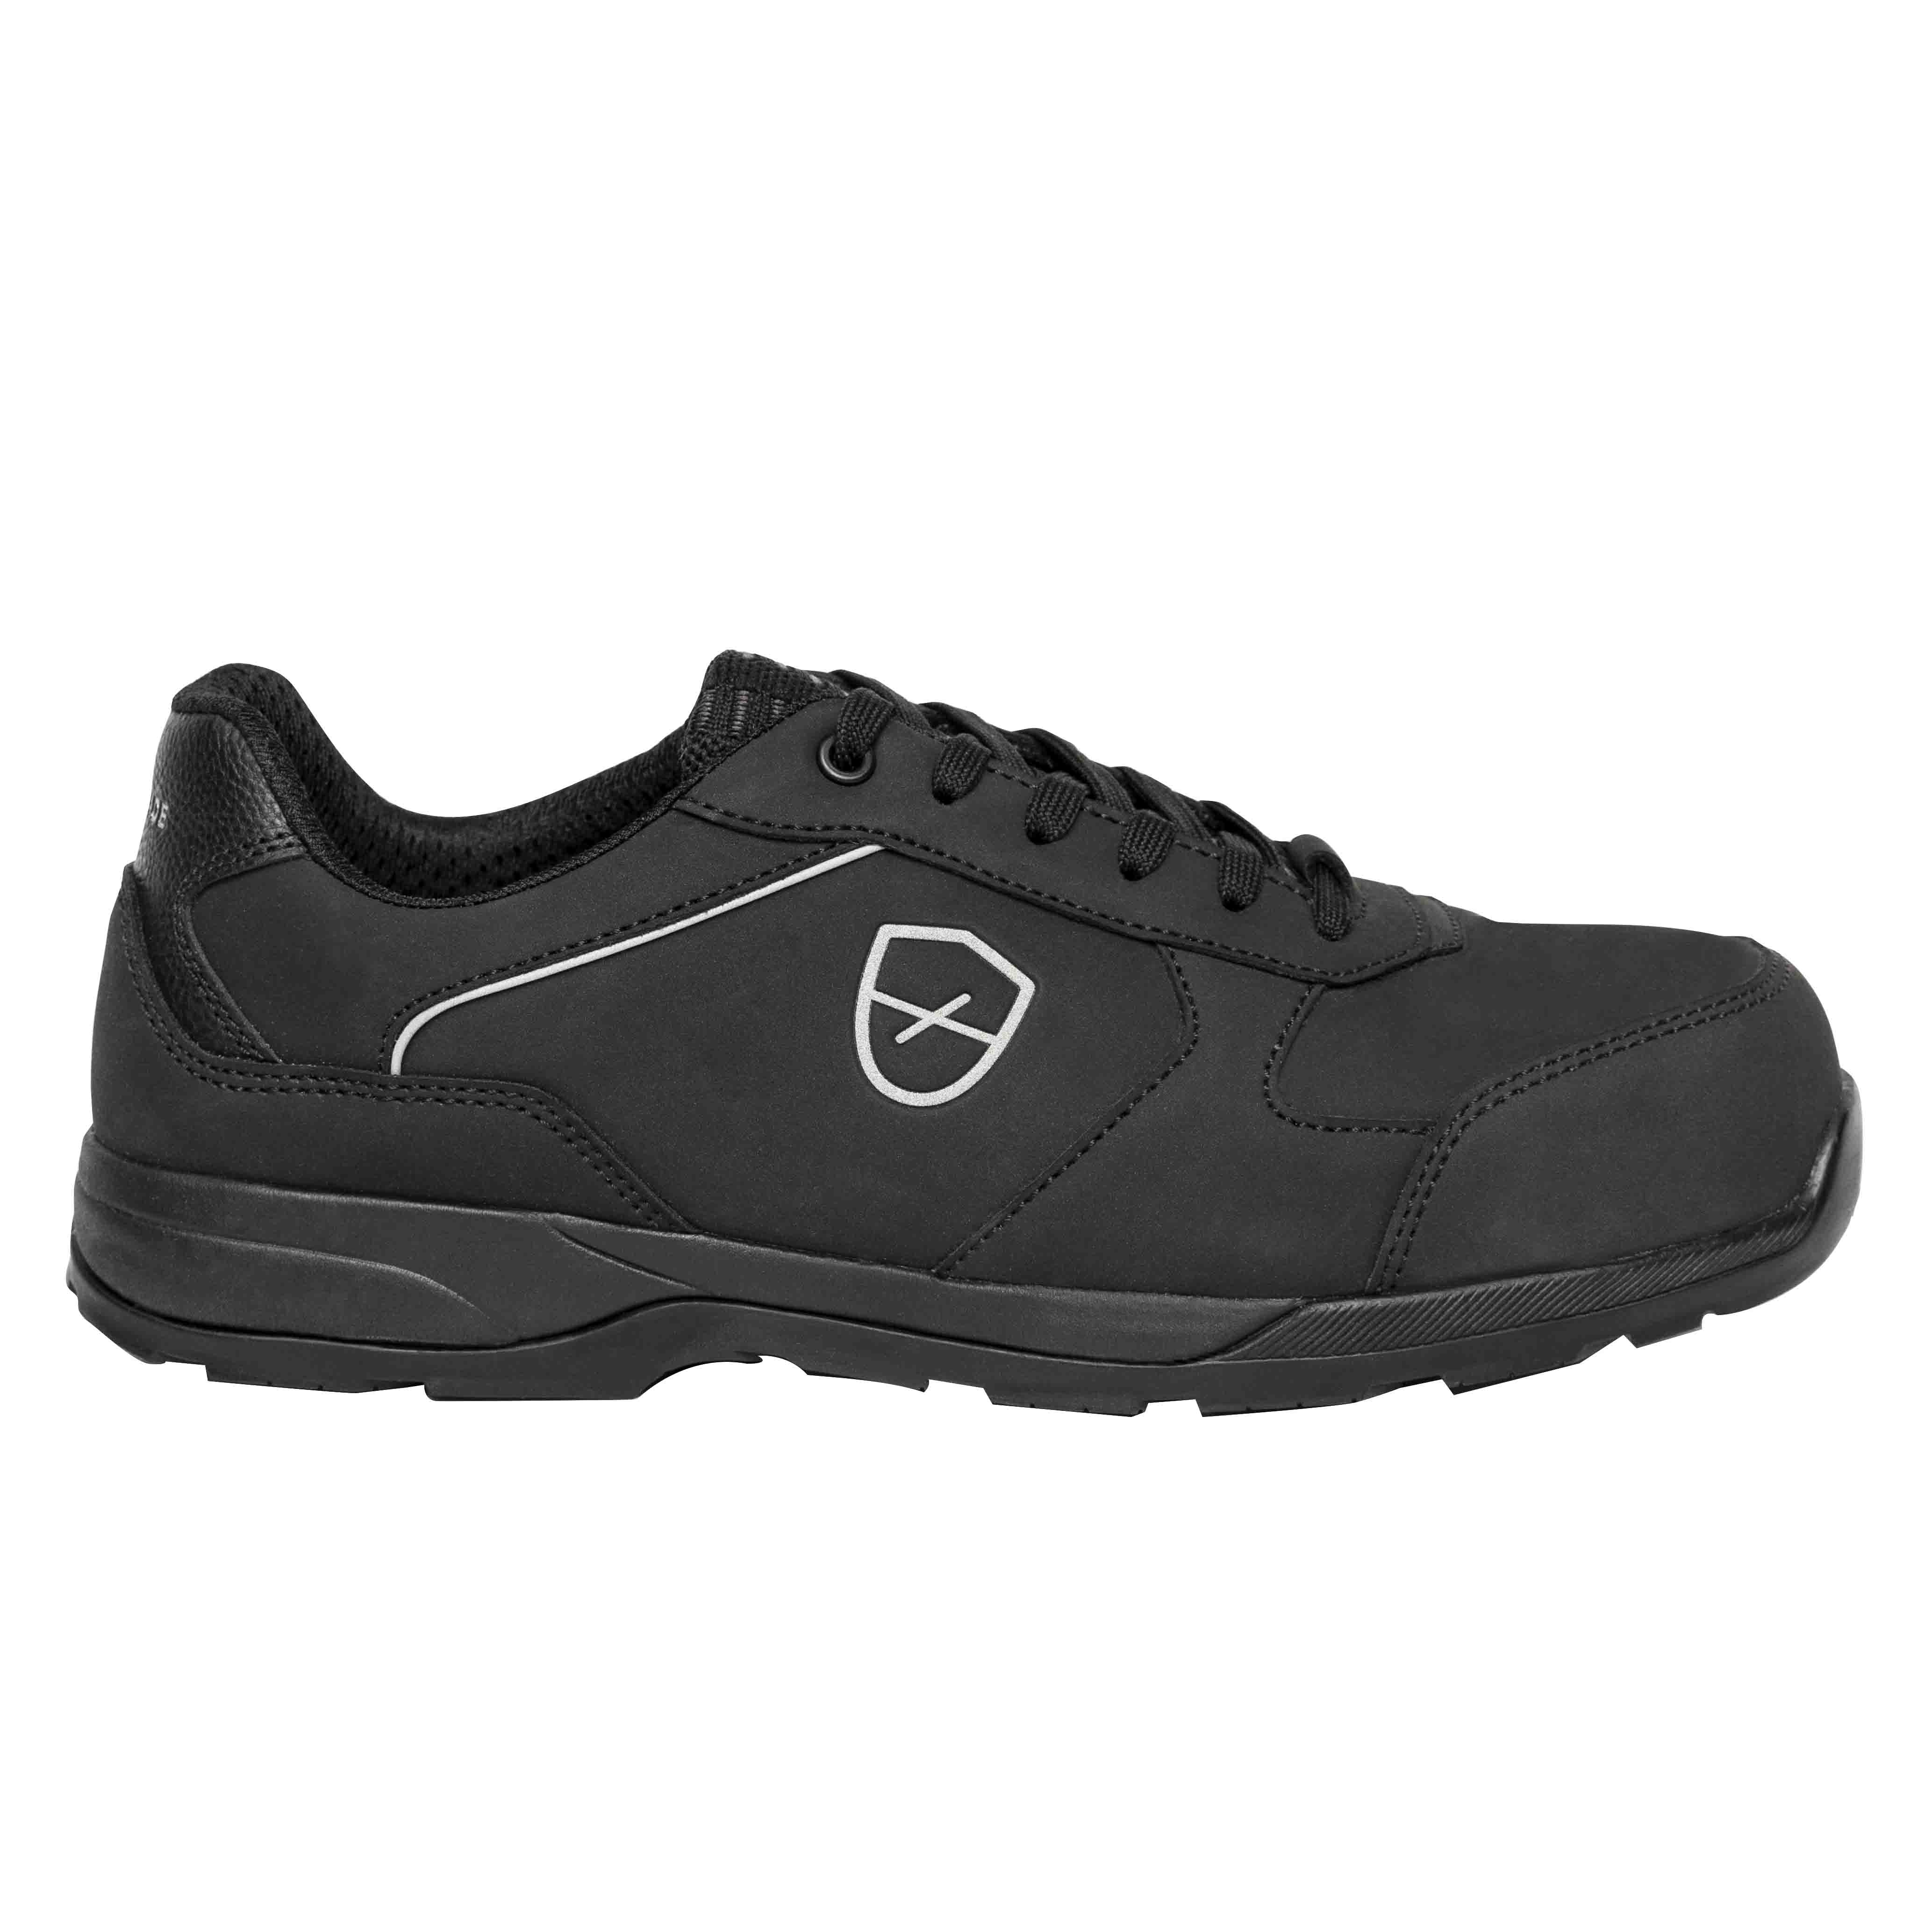 Chaussures de sécurité basses Romane Mixte, T 44 Noir, Antistatiques